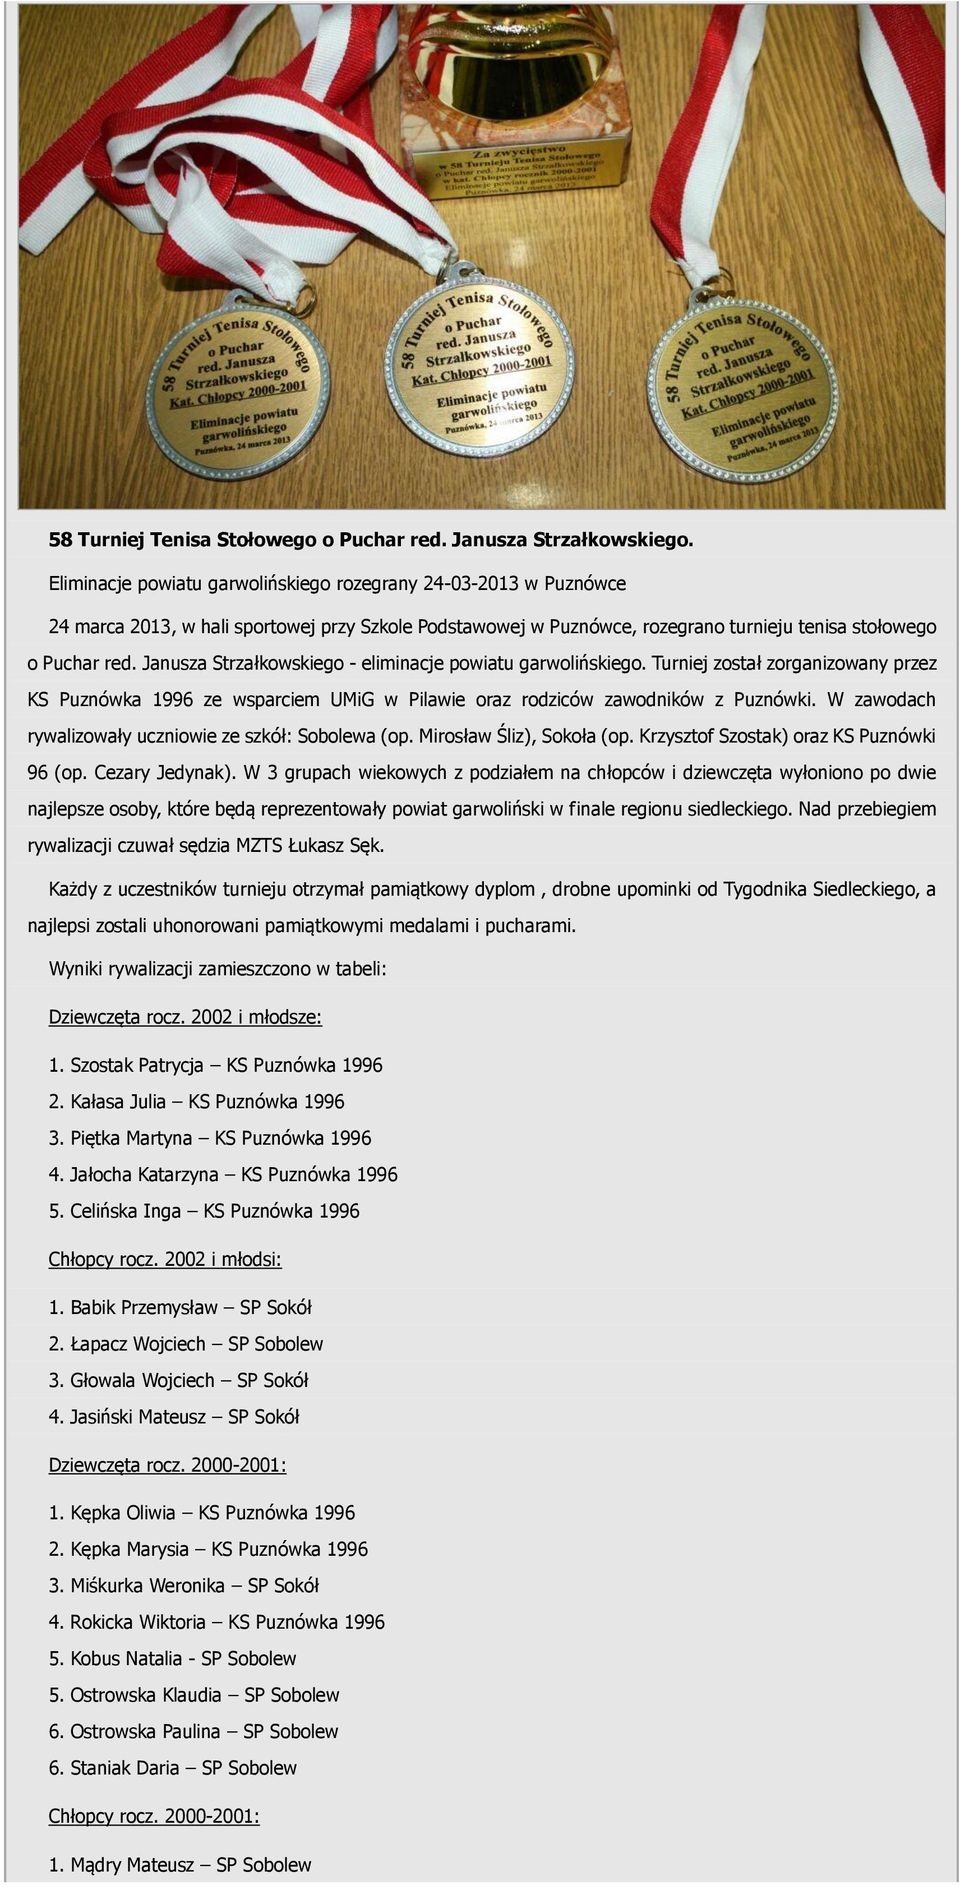 Janusza Strzałkowskiego - eliminacje powiatu garwolińskiego. Turniej został zorganizowany przez KS Puznówka 1996 ze wsparciem UMiG w Pilawie oraz rodziców zawodników z Puznówki.